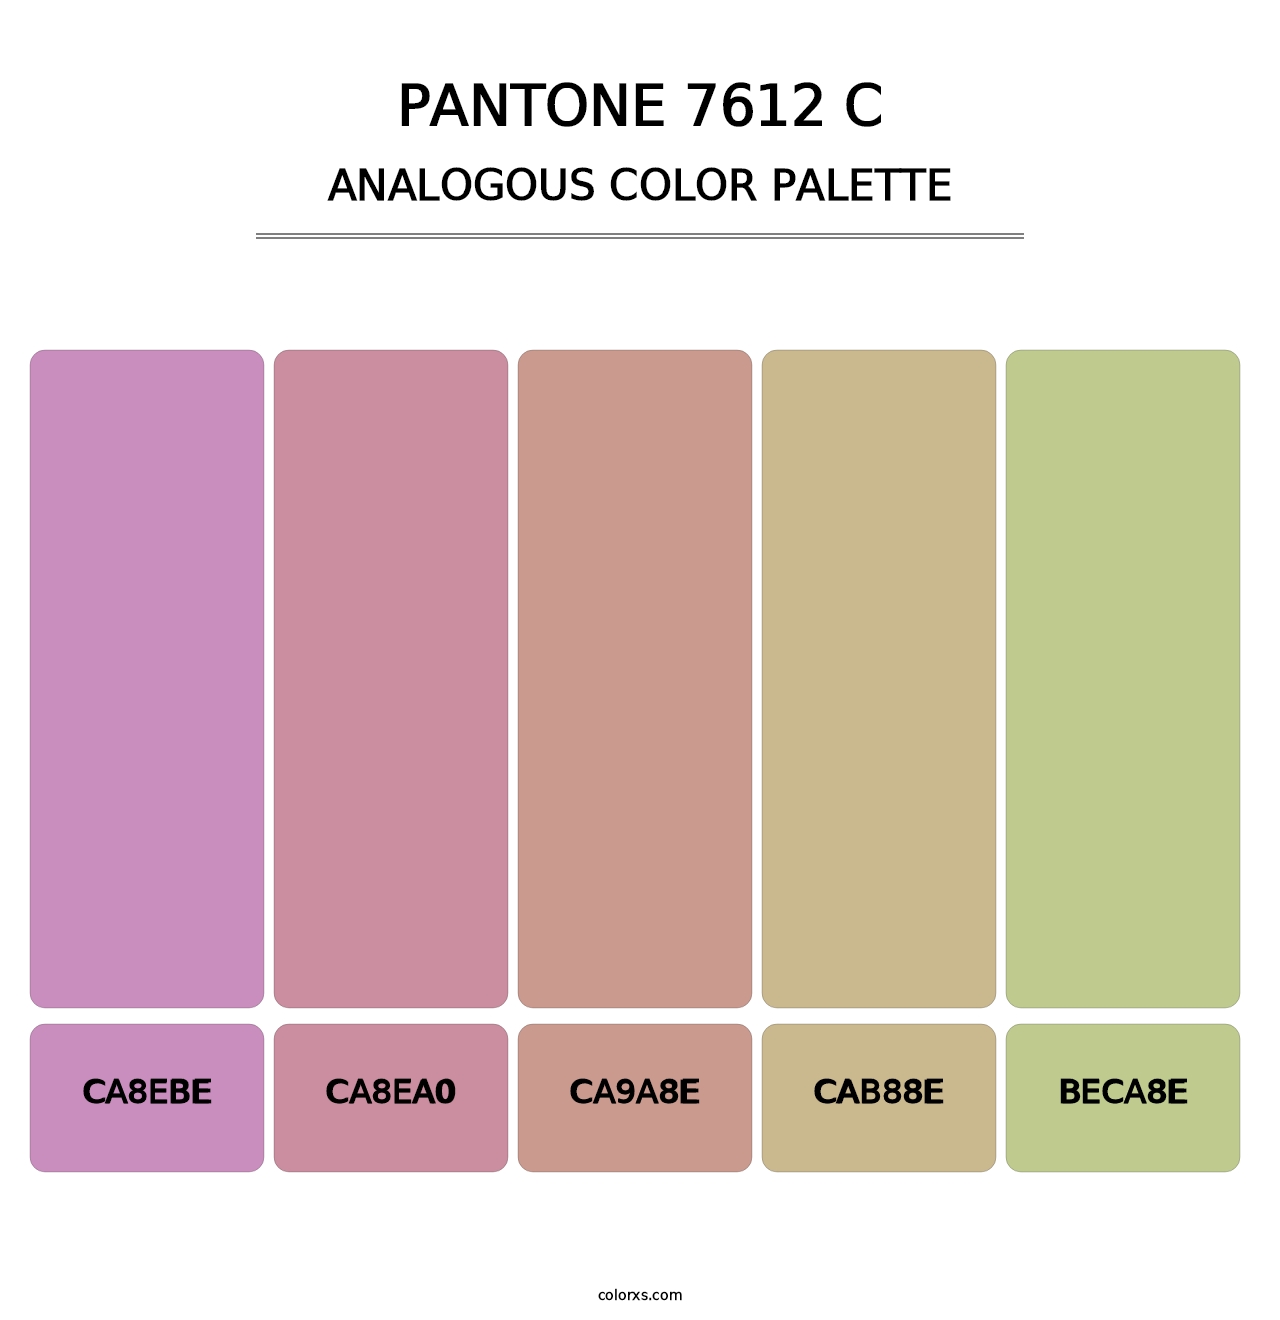 PANTONE 7612 C - Analogous Color Palette